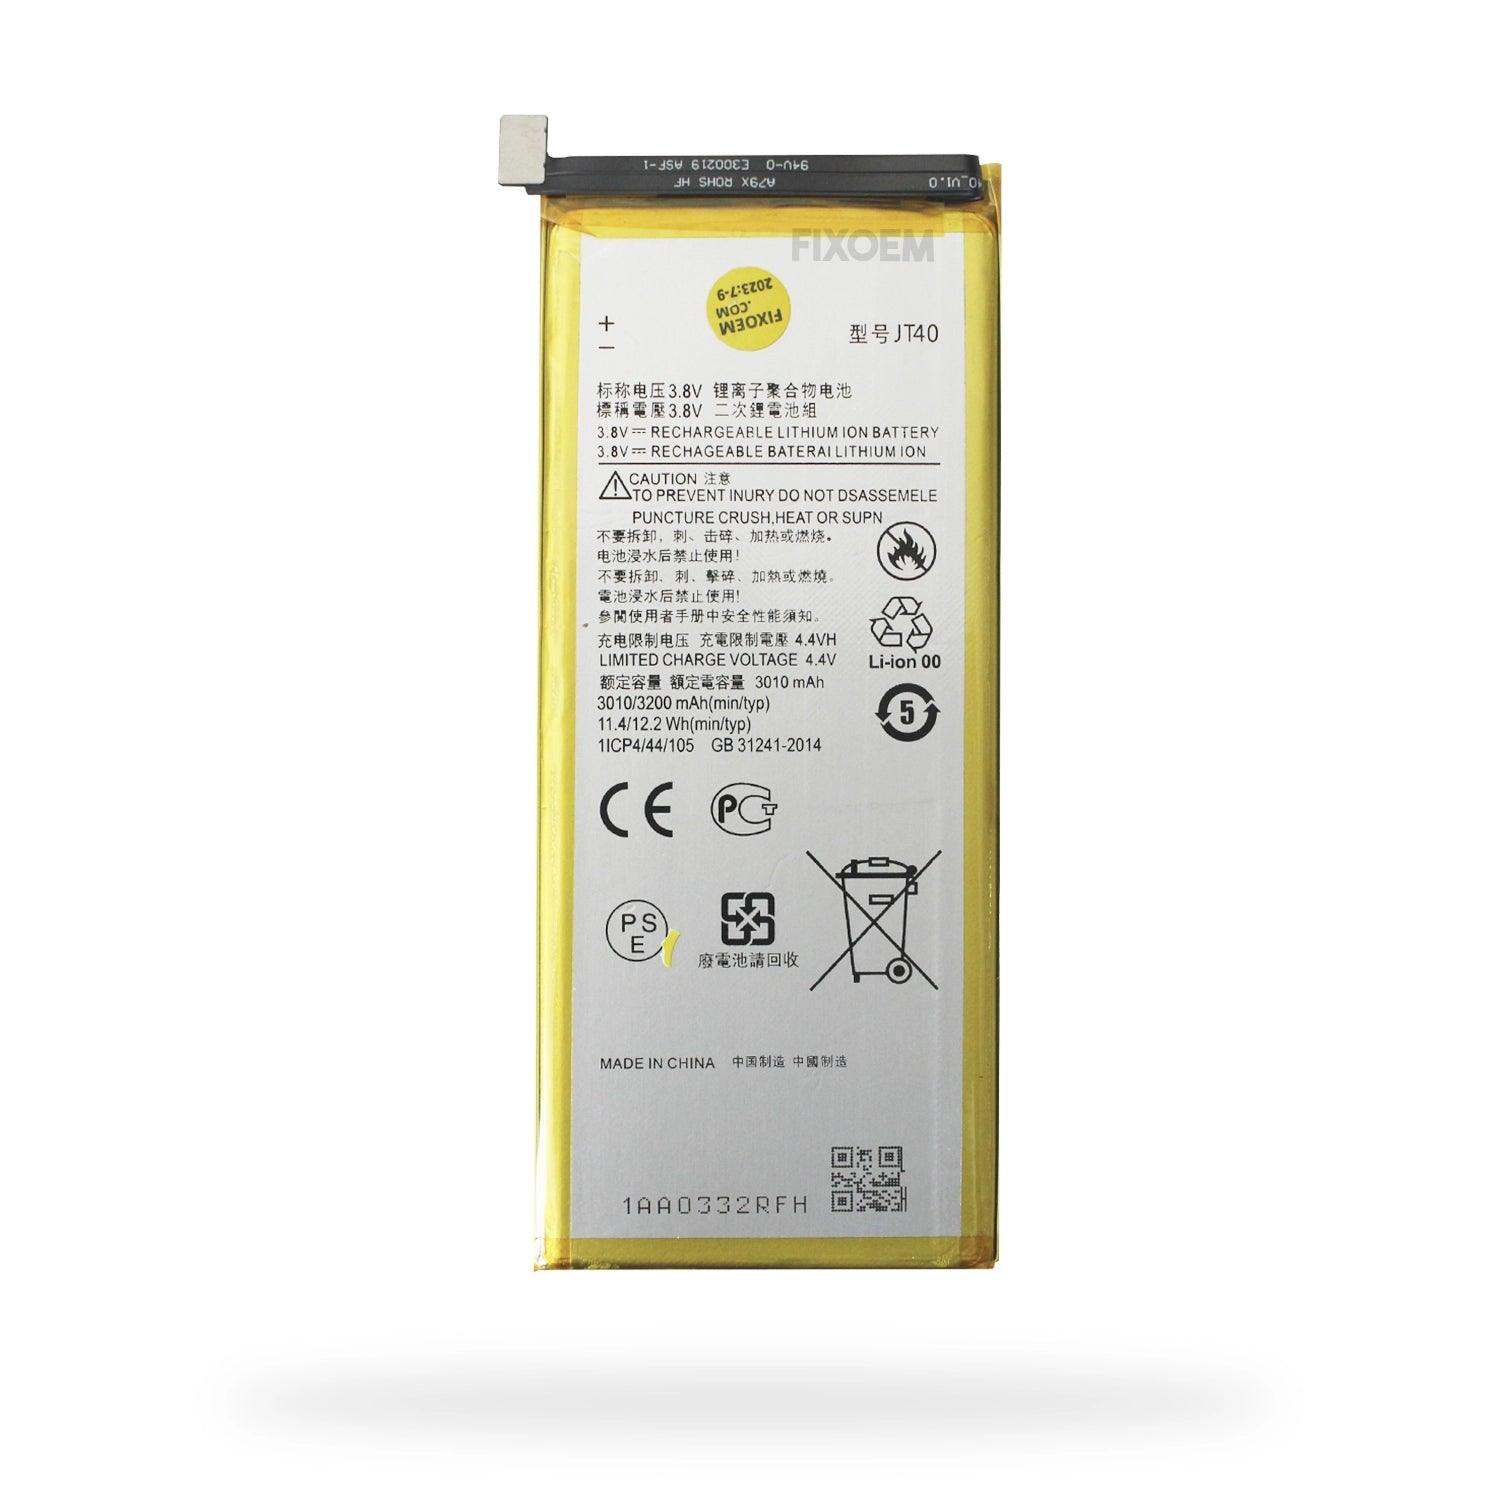 Bateria Moto G6 Plus Xt1926 Jt40 a solo $ 120.00 Refaccion y puestos celulares, refurbish y microelectronica.- FixOEM